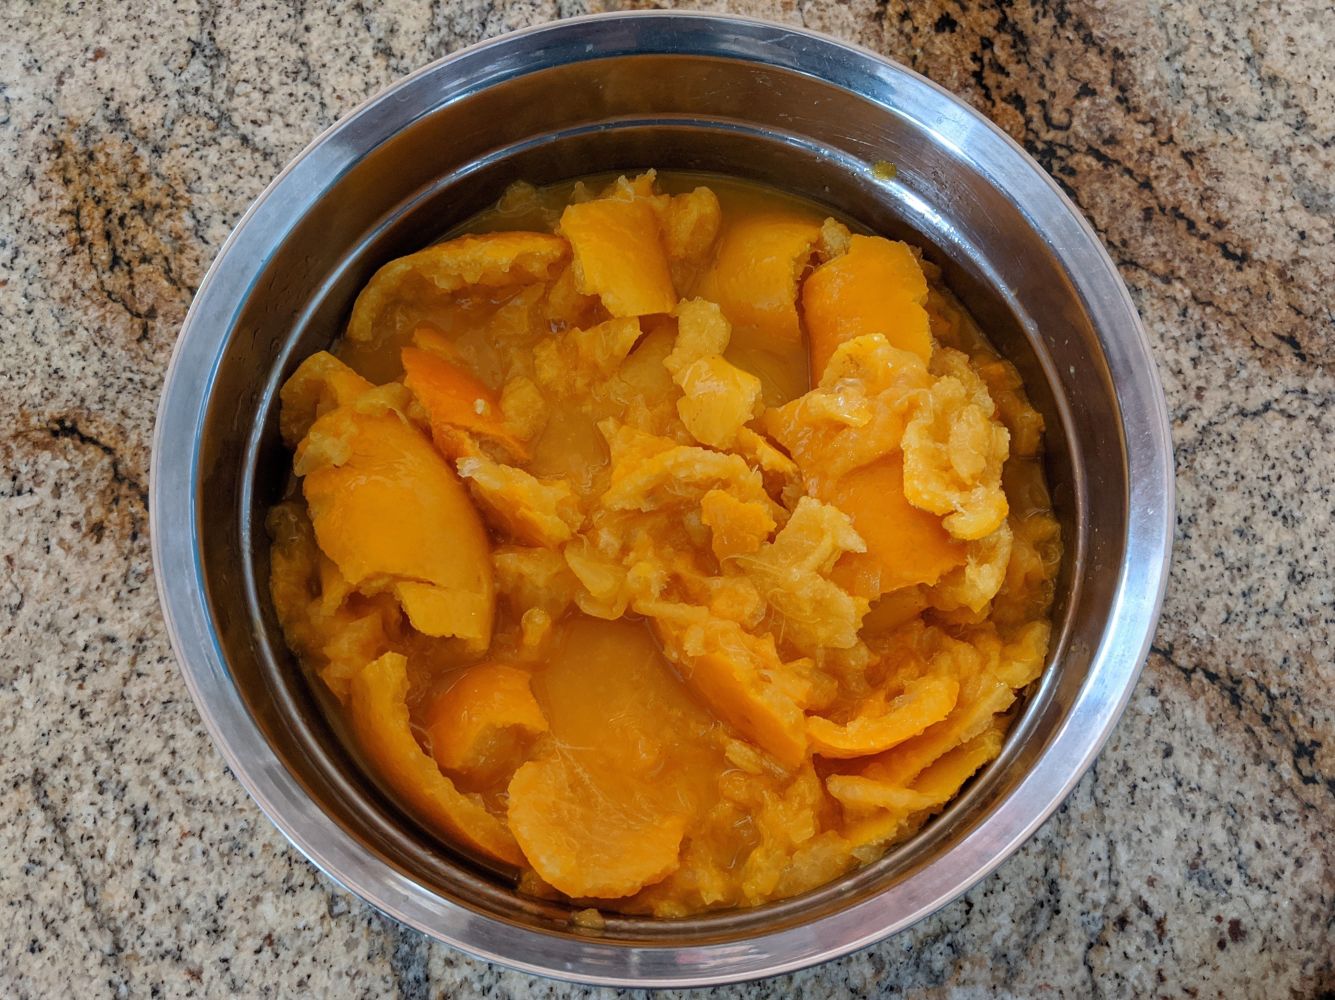 chopped oranges in a pot